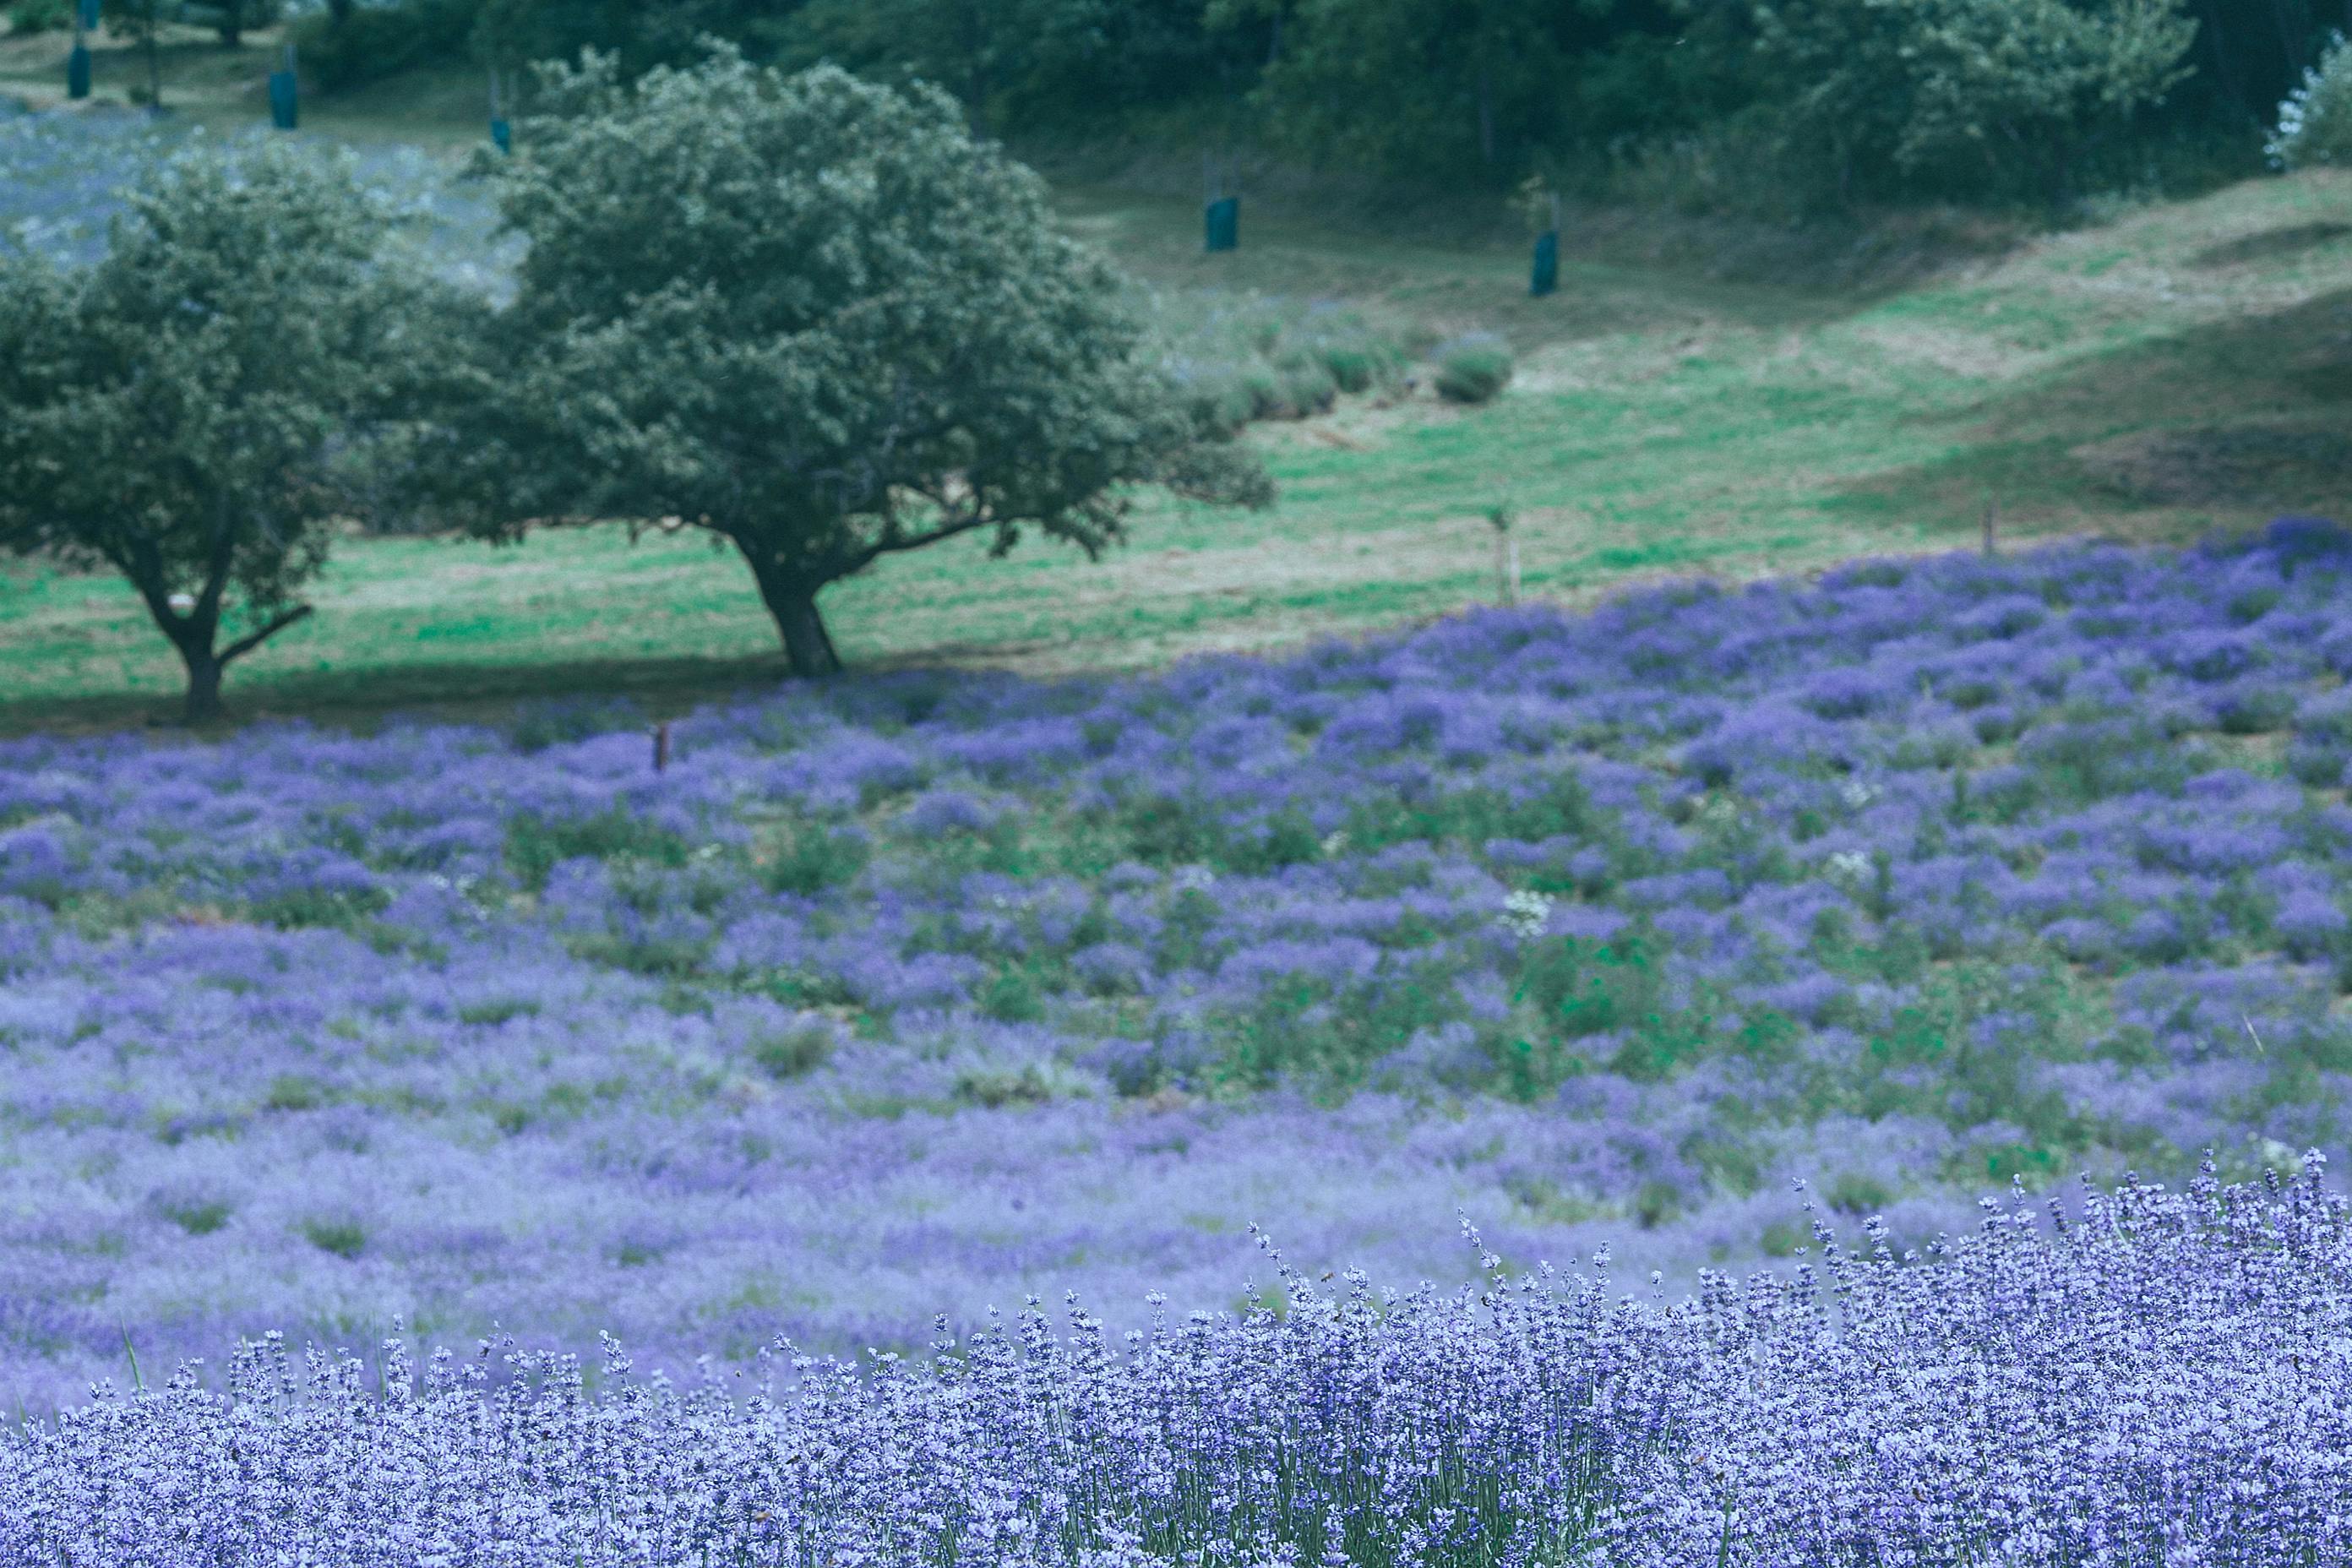 Lavender field: Lavender field là một trong những điểm đến lý tưởng cho những ai yêu thích tinh thần thiên nhiên và muốn thư giãn sau những ngày bận rộn. Những cánh hoa tím tím huyền ảo với hương thơm đặc trưng của chúng mang đến cảm giác yên bình, tĩnh lặng và đầy sự cân bằng. Hãy chiêm ngưỡng những hình ảnh tuyệt đẹp của Lavender field để khám phá thế giới thiên nhiên và trải nghiệm những khoảnh khắc đáng nhớ.